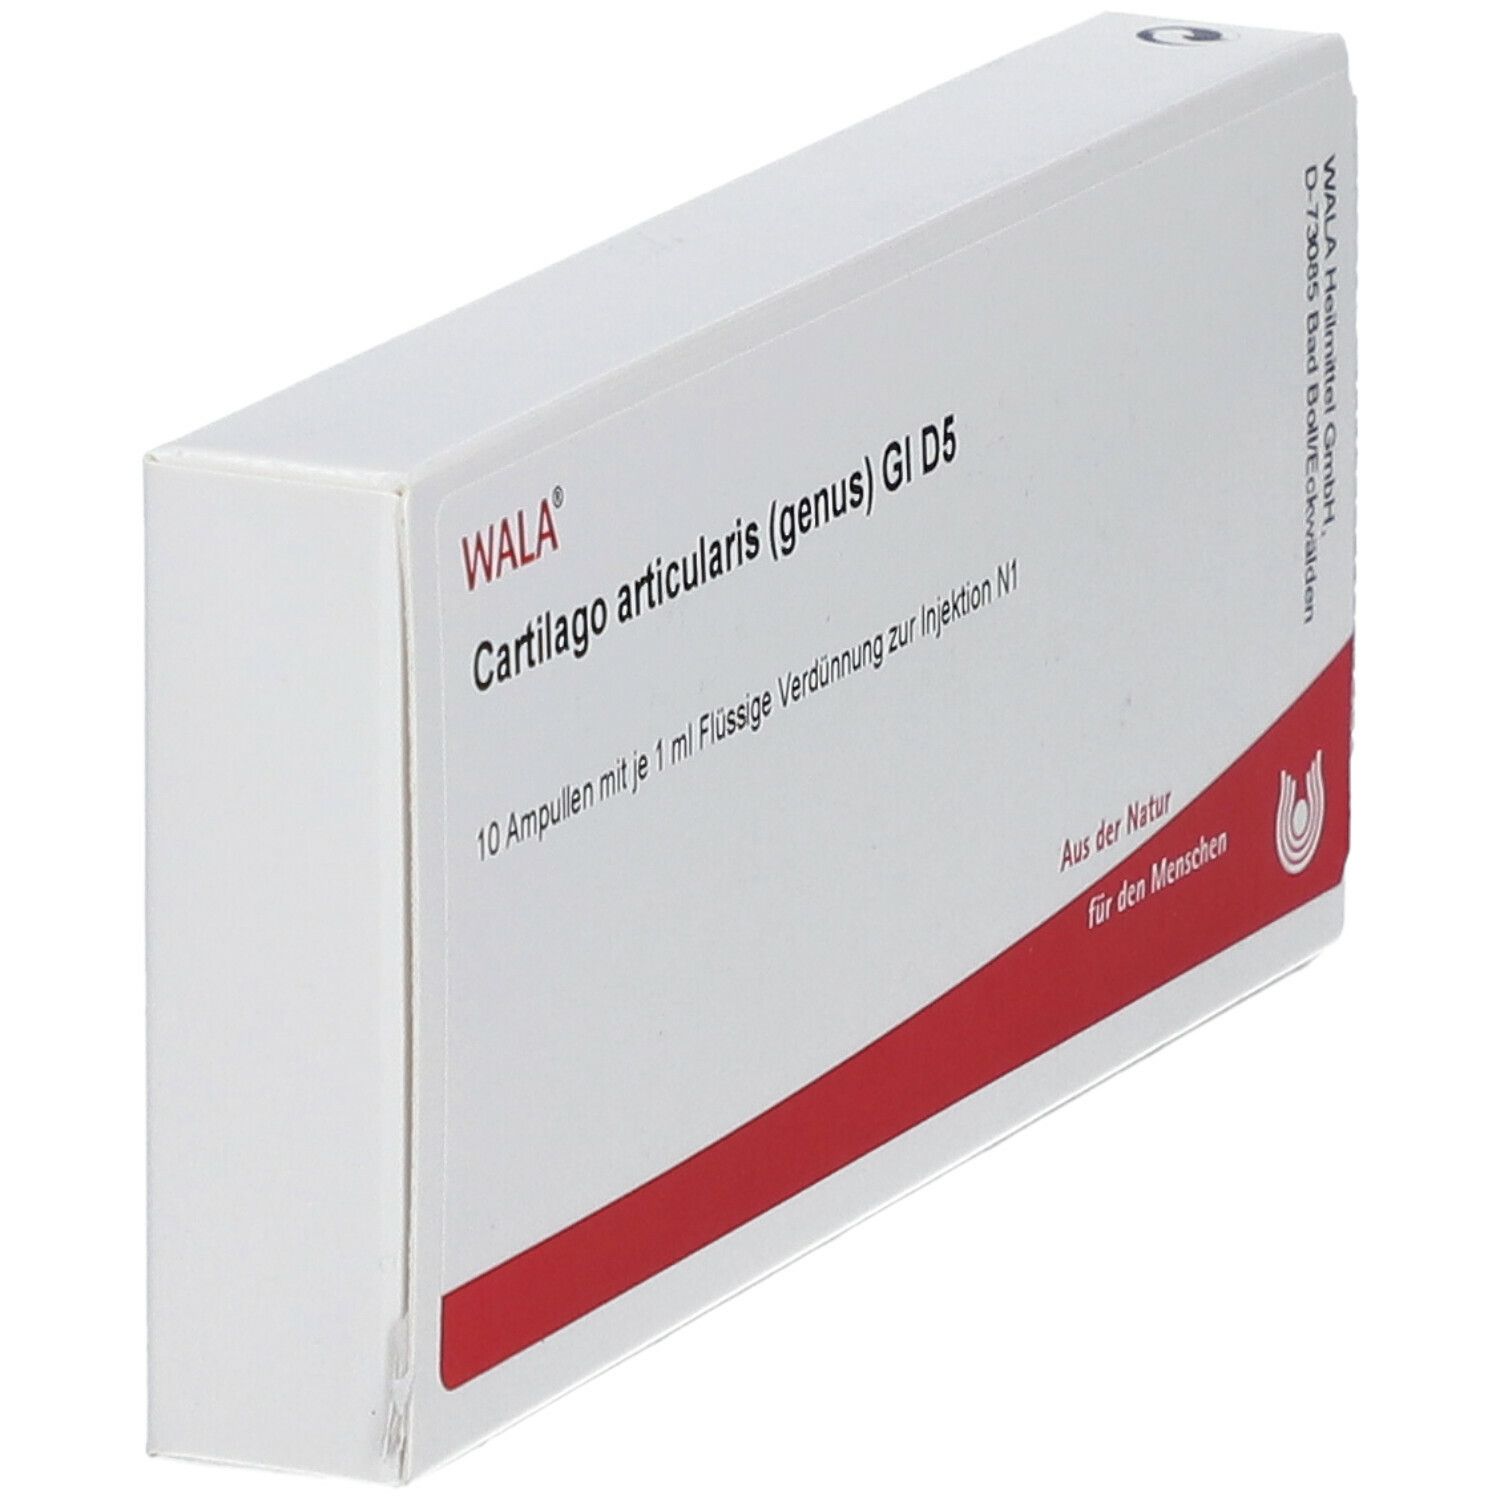 WALA® Cartilago articularis genus Gl D 5